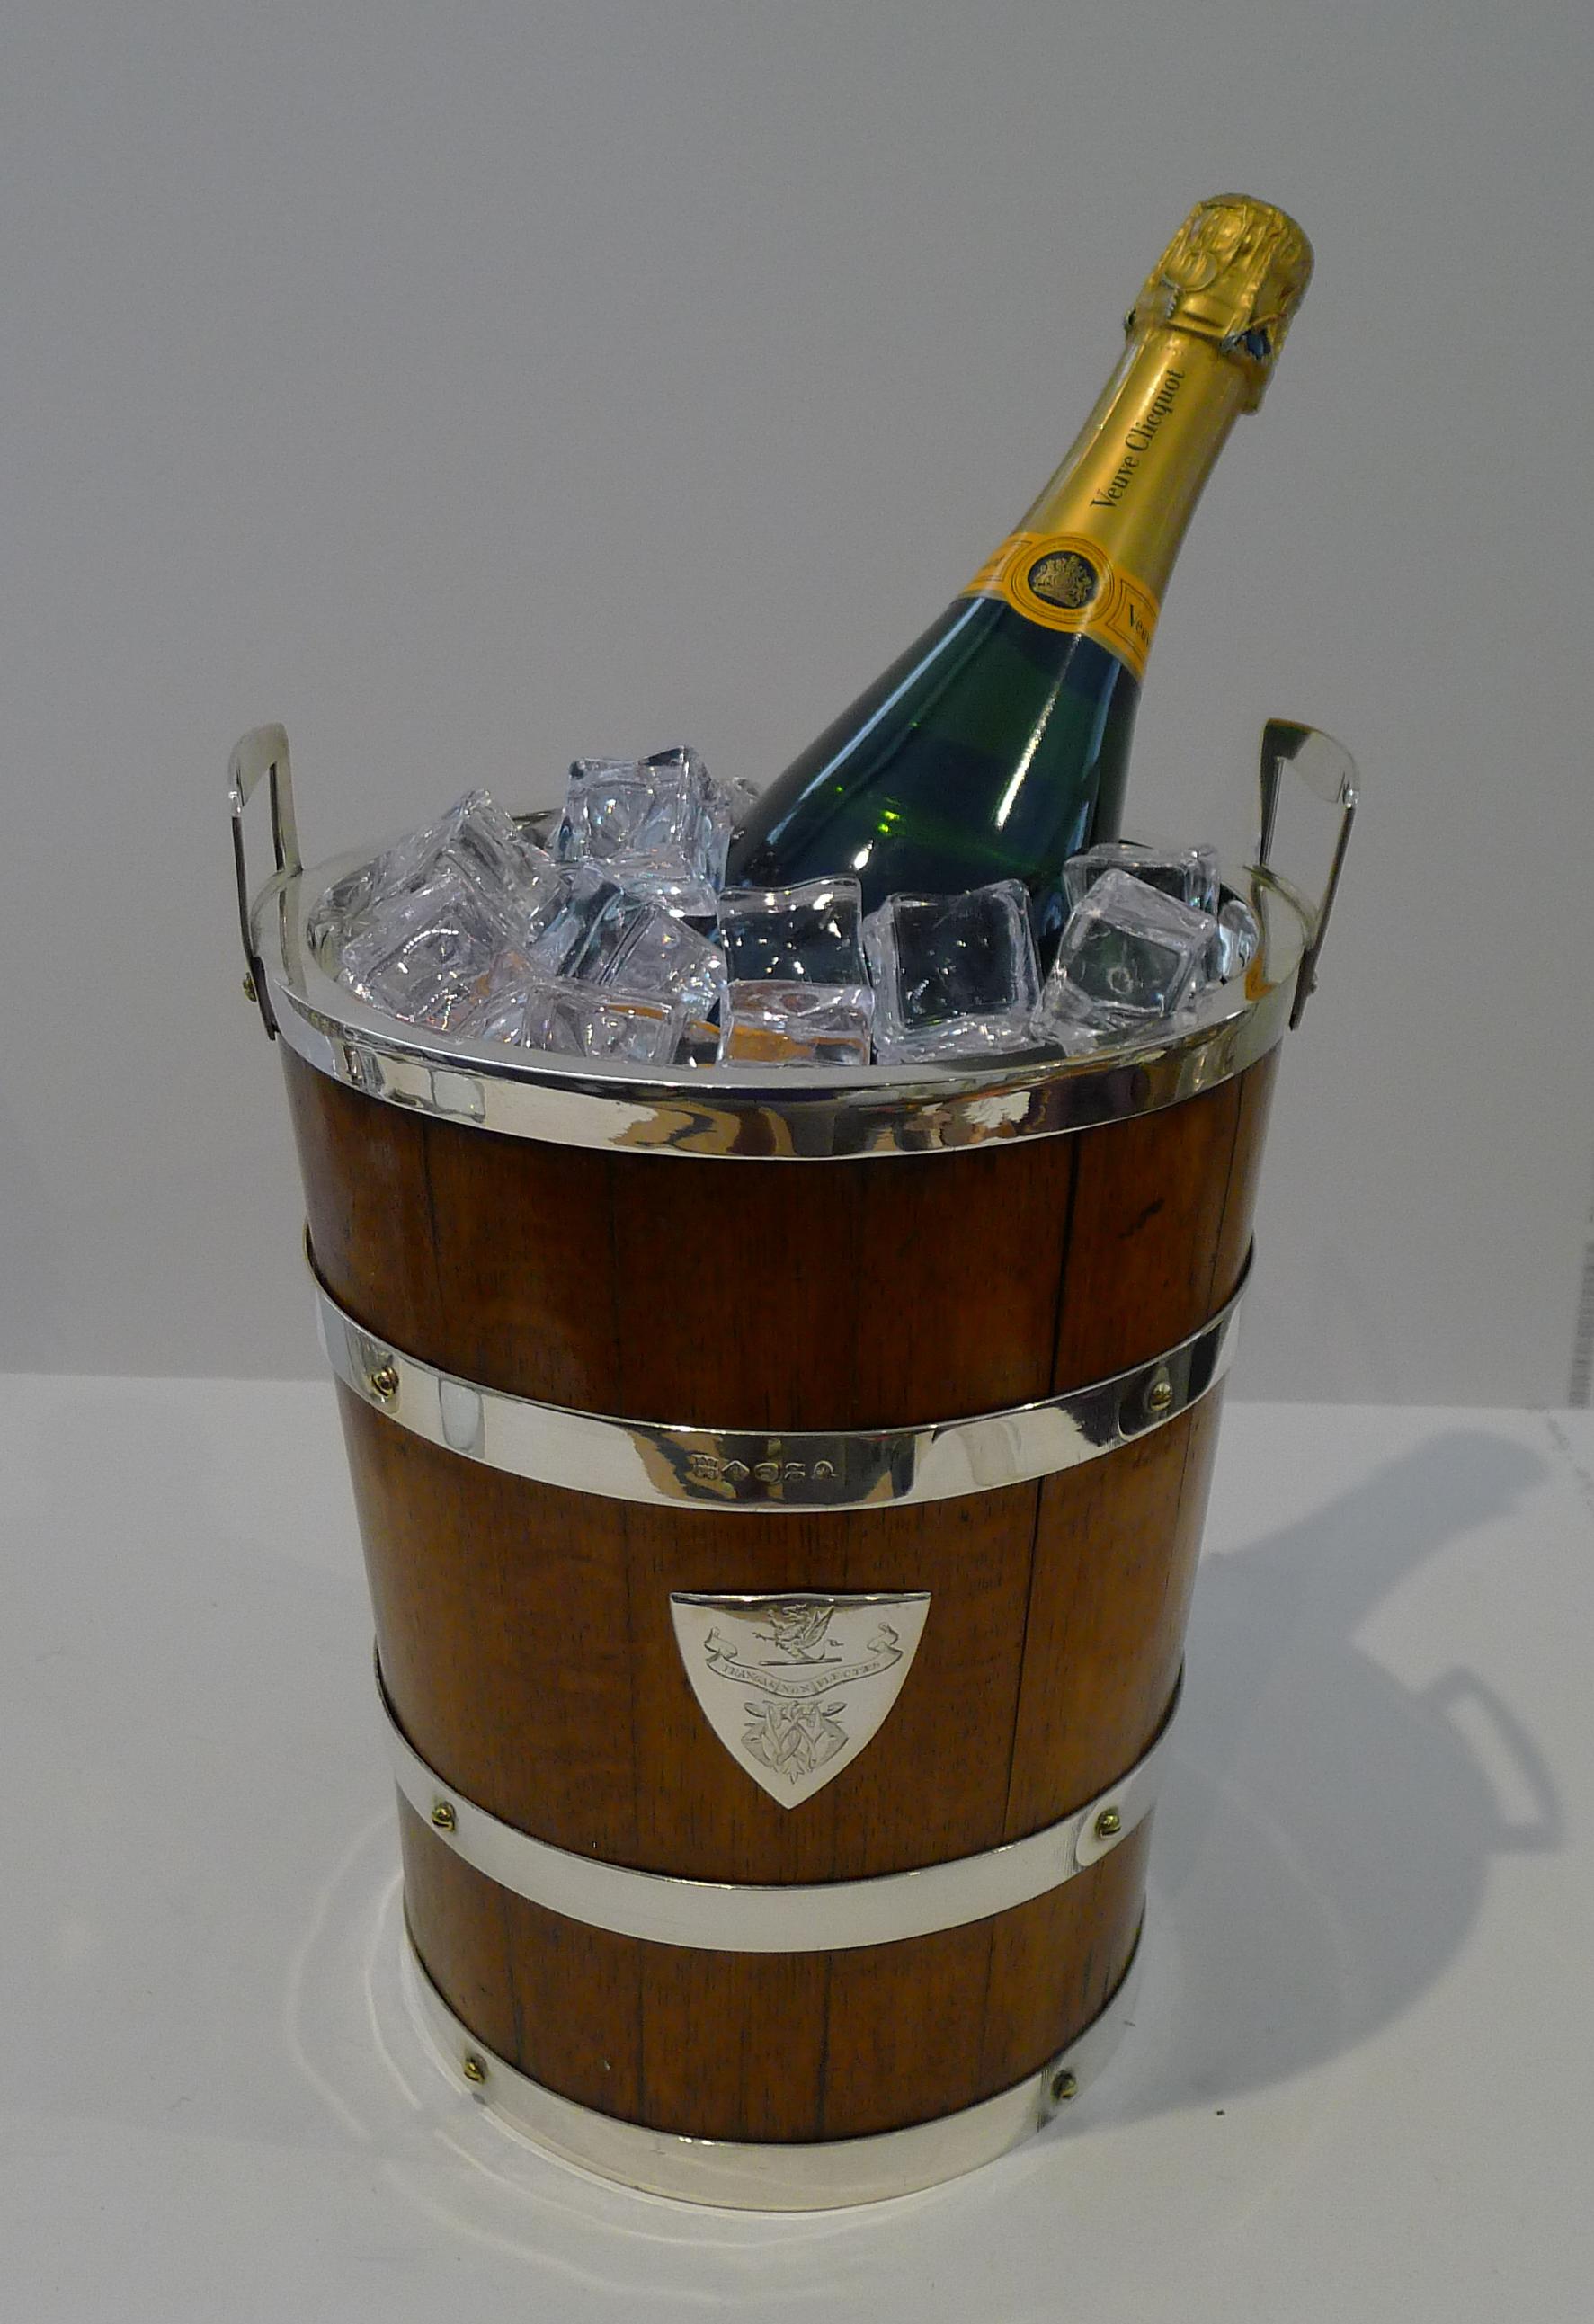 Ein wahrhaft seltener Fund, ein antiker englischer Weinkühler / Champagnerkübel aus Eichenholz und versilbert in Form eines Küfereimers aus der viktorianischen Epoche, datiert auf ca. 1870.

Auf der Vorder- und Rückseite ist eine schildförmige